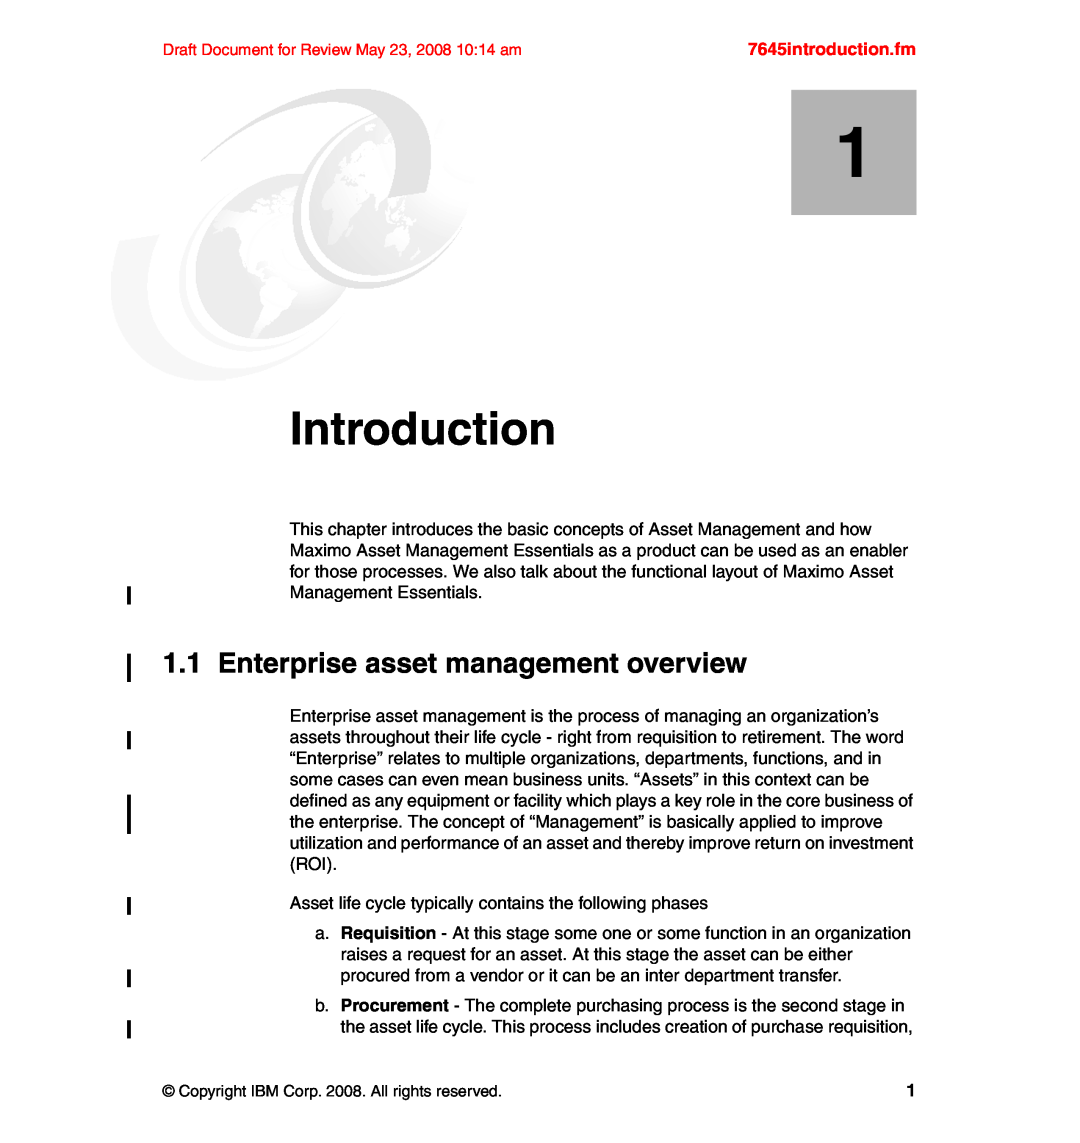 IBM SG24-7645-00 manual Introduction, Enterprise asset management overview, 7645introduction.fm 